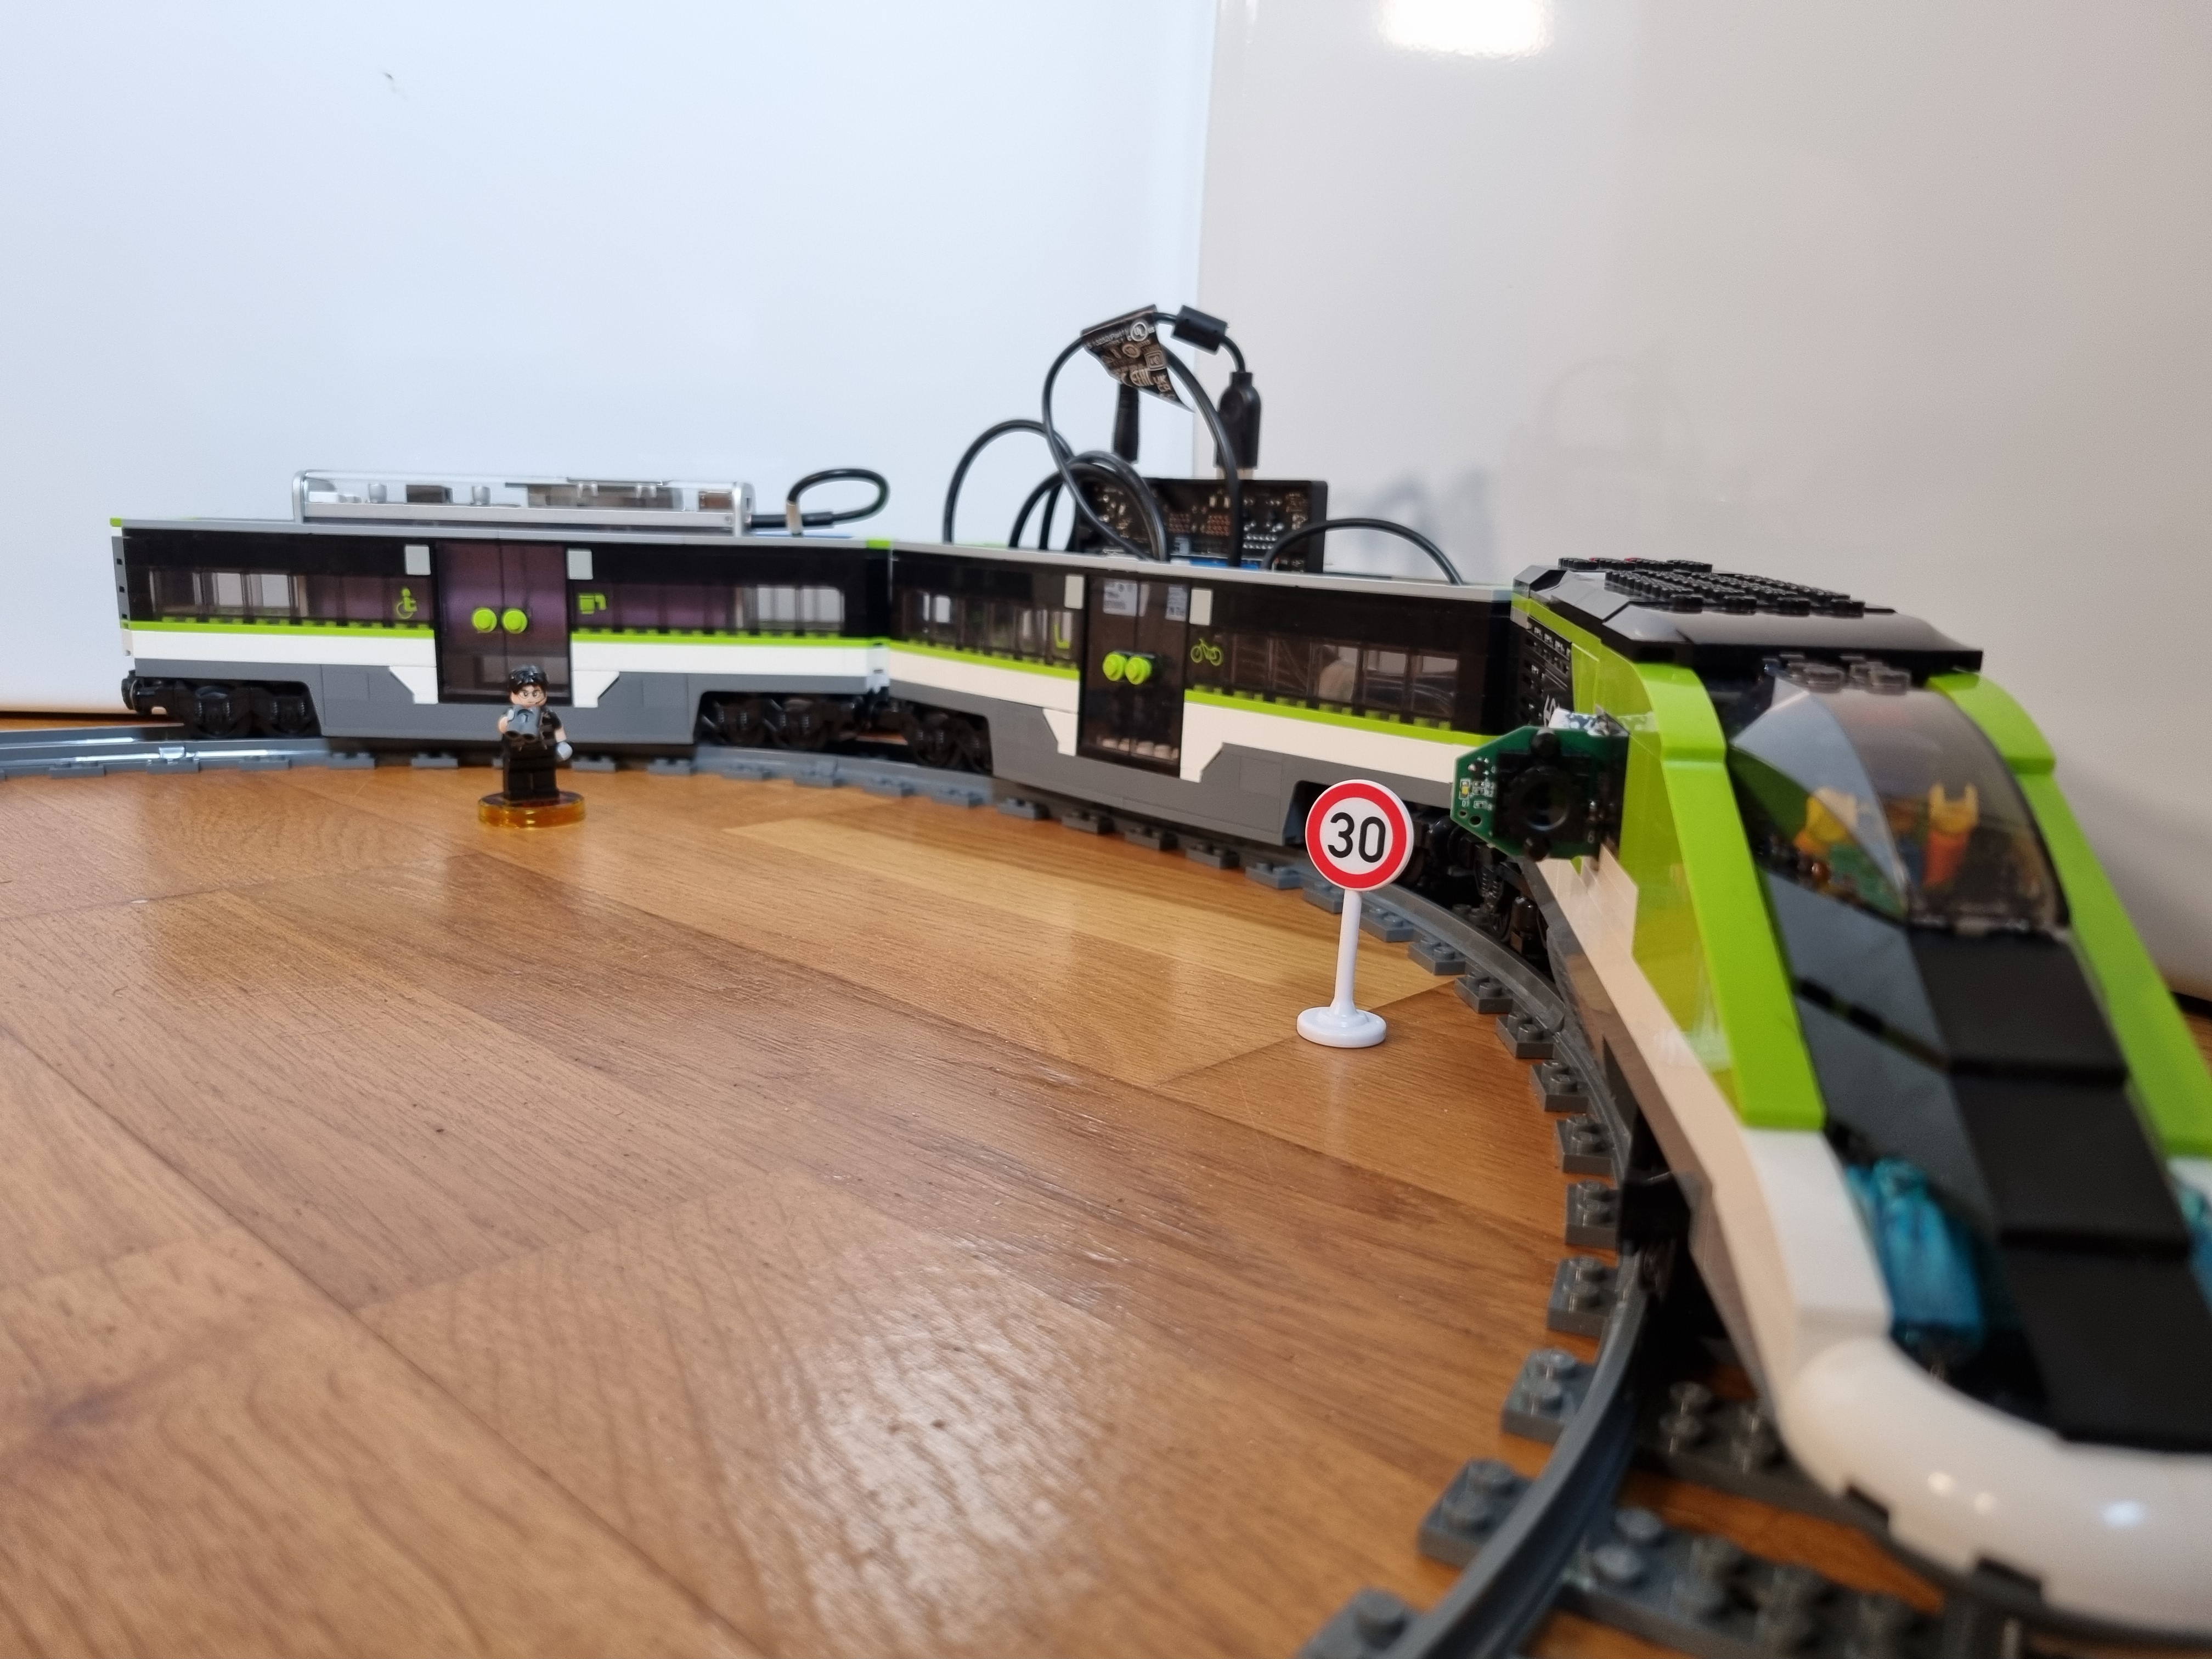 Le train Lego équipé de la webcam, du Nvidia Jetson Orin et de la batterie.